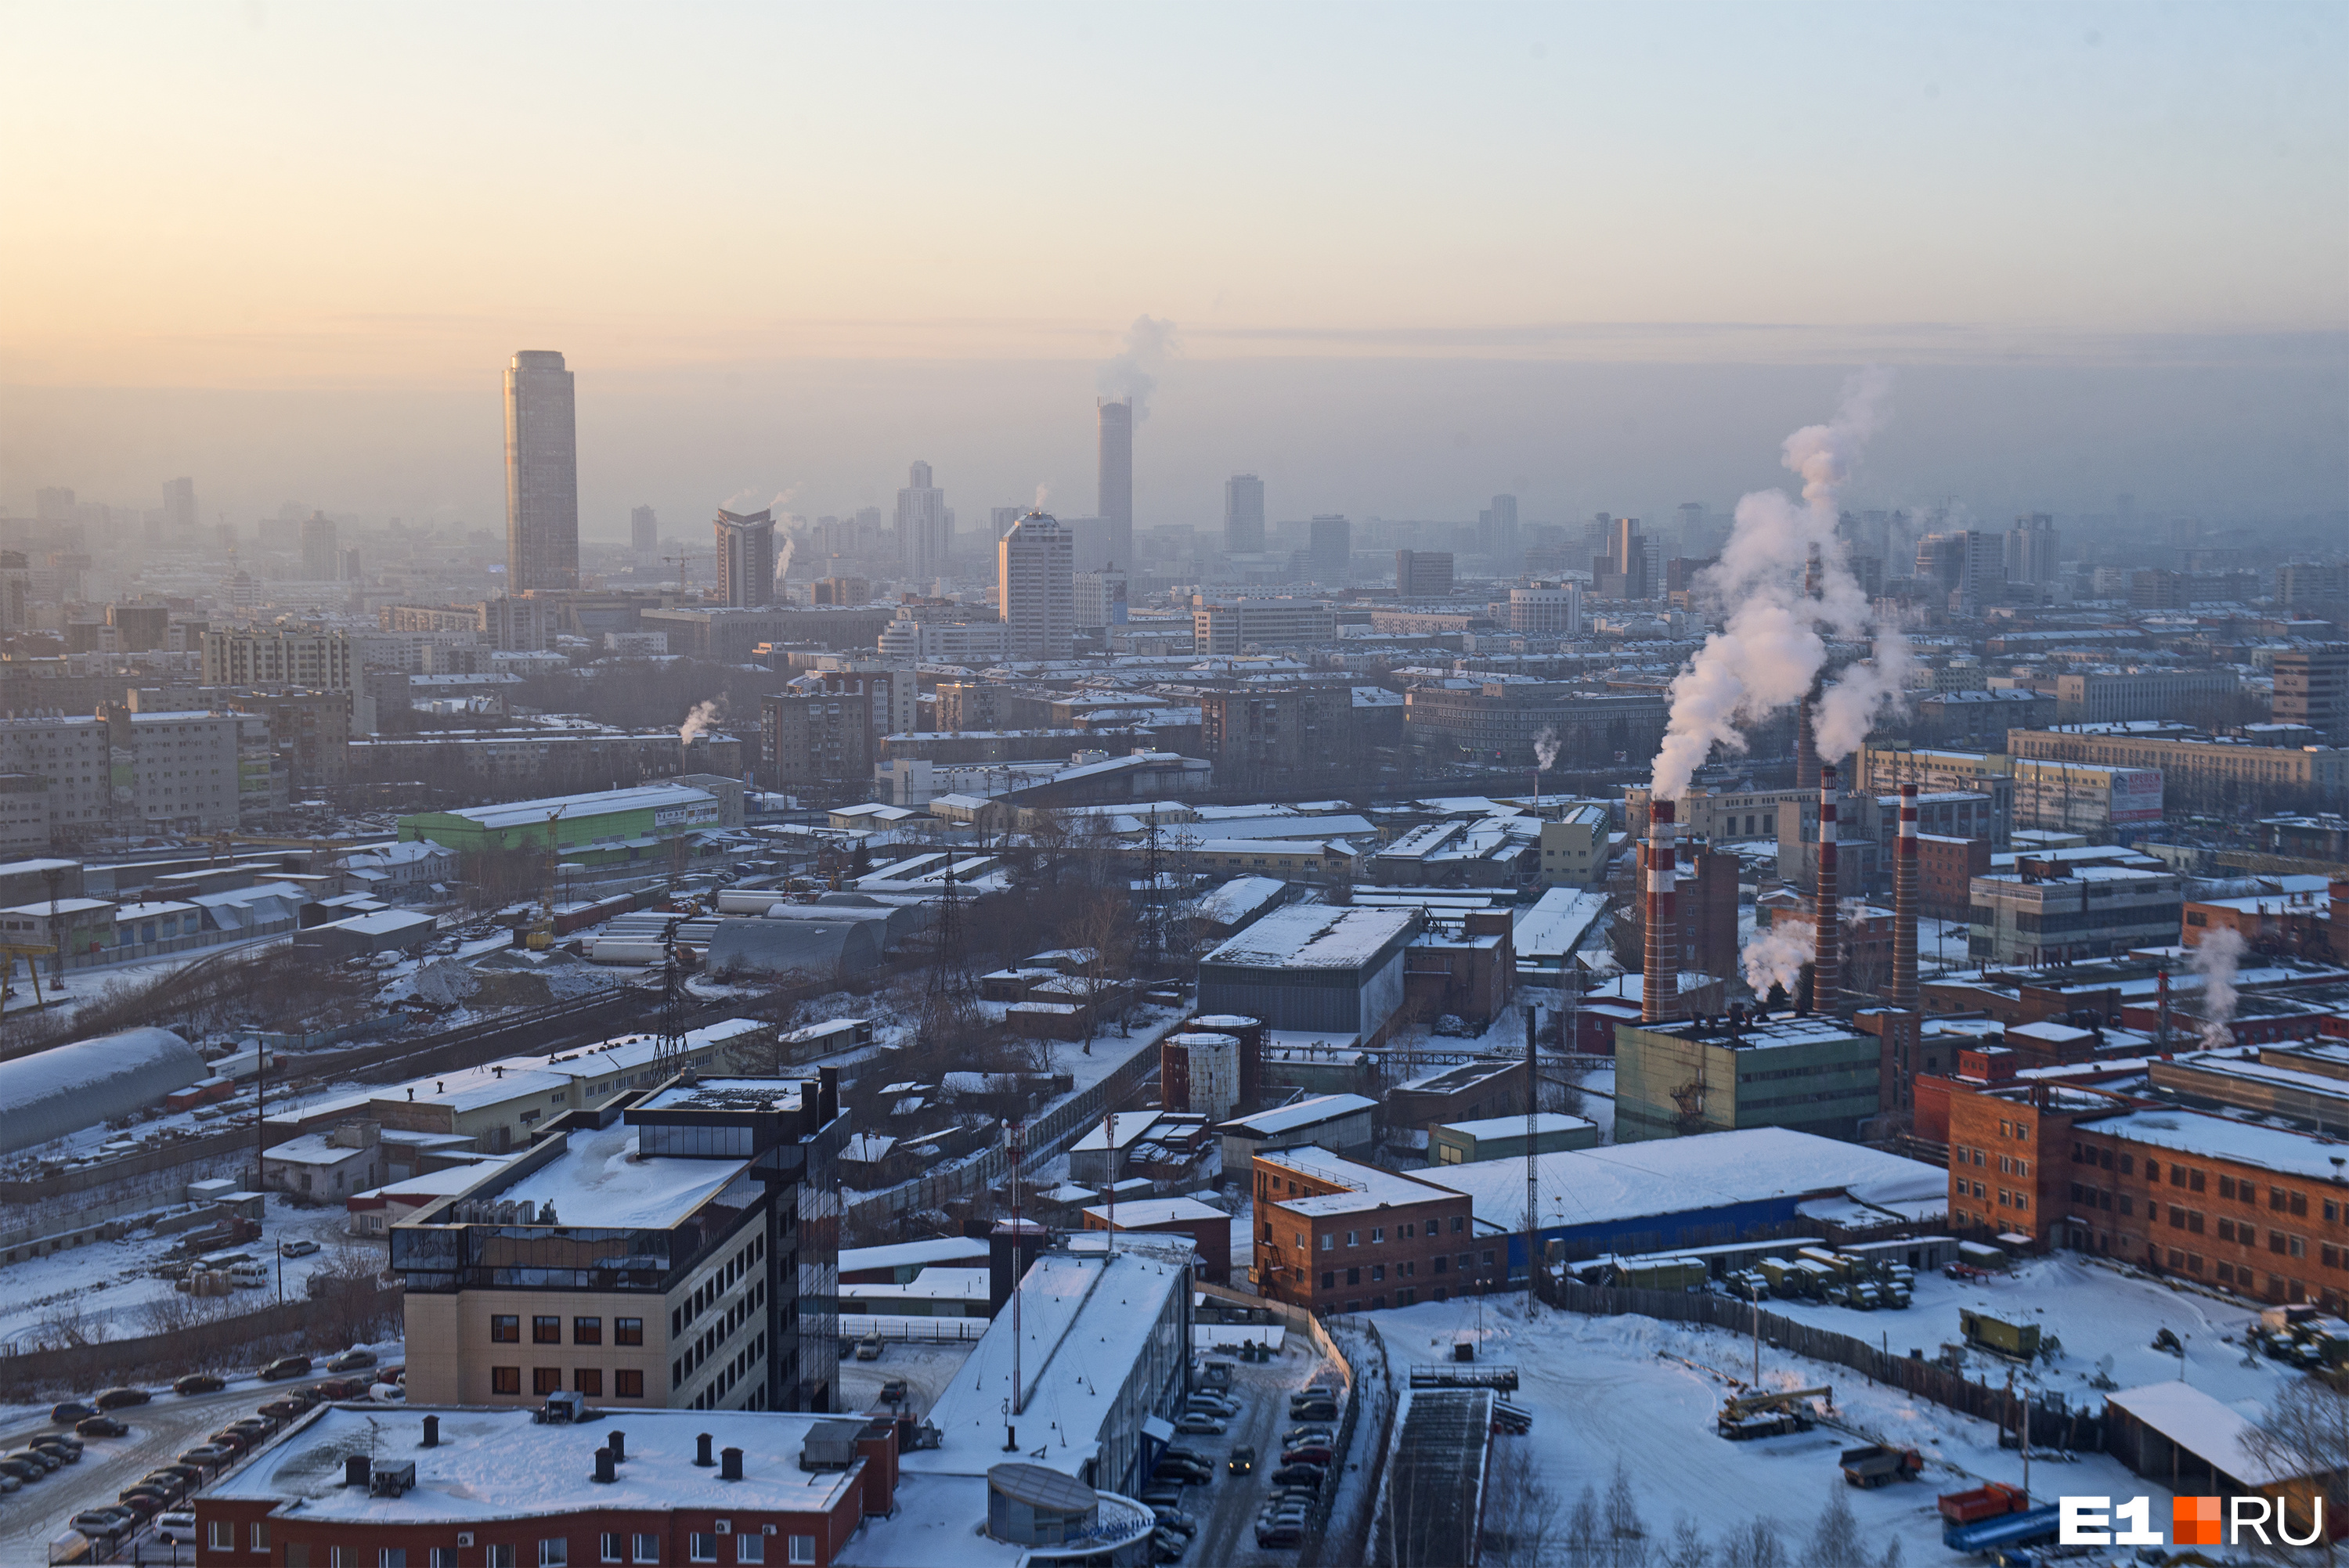 Середина зимы — 2021/2022 может стать переломным моментом для цен на вторичном рынке жилья в Екатеринбурге